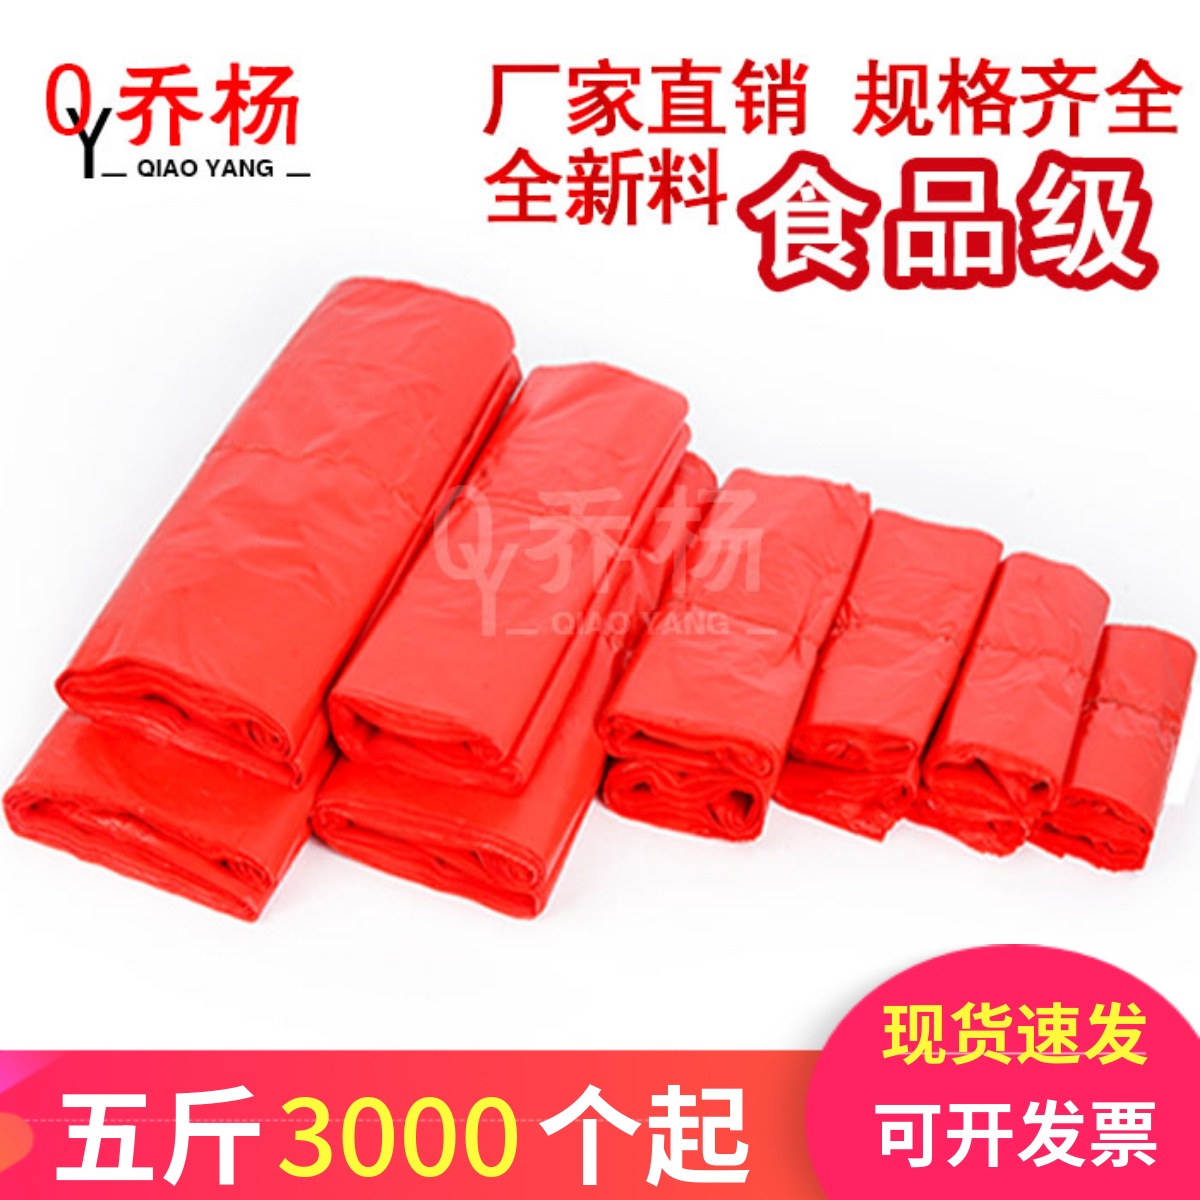 红色塑料袋食品袋蔬菜水果袋加厚背心式方便袋彩色购物袋子包邮